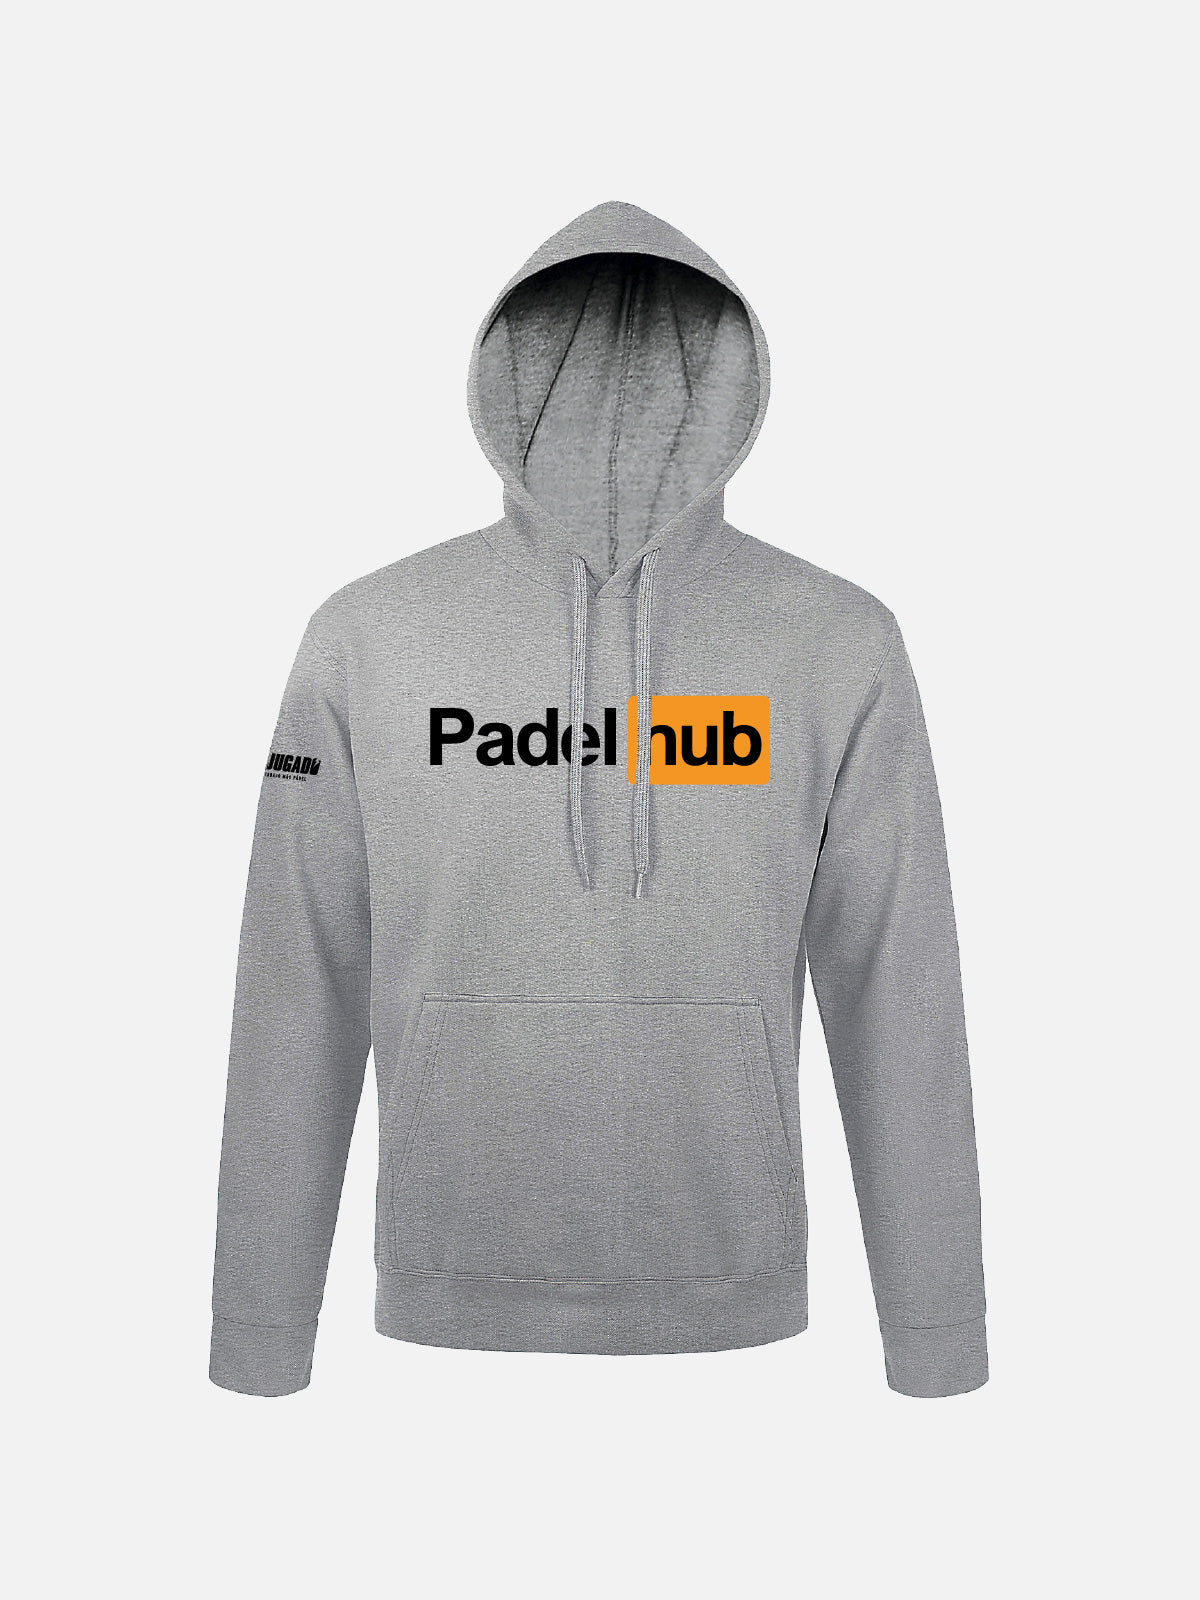 Unisex Fun Sweatshirt - Padel Hub